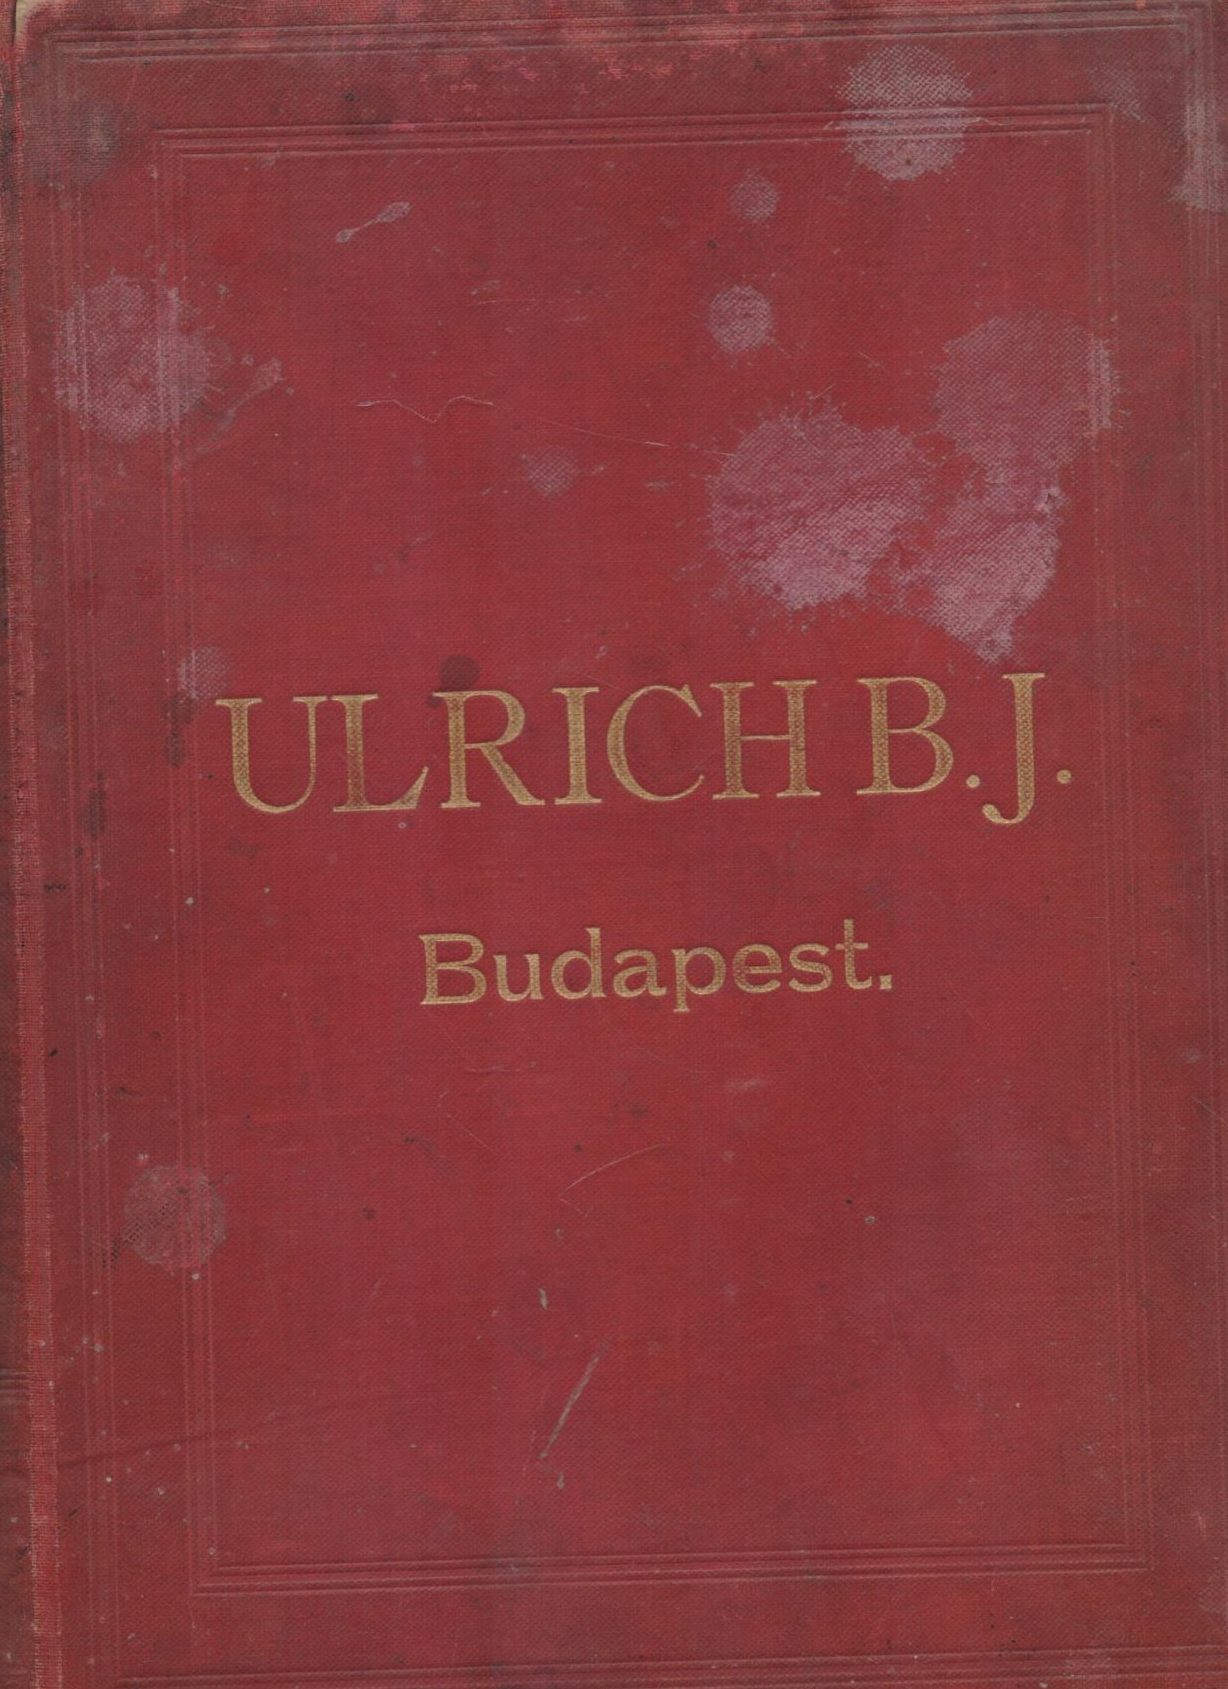 Ulrich B.J. Budapest G.A.